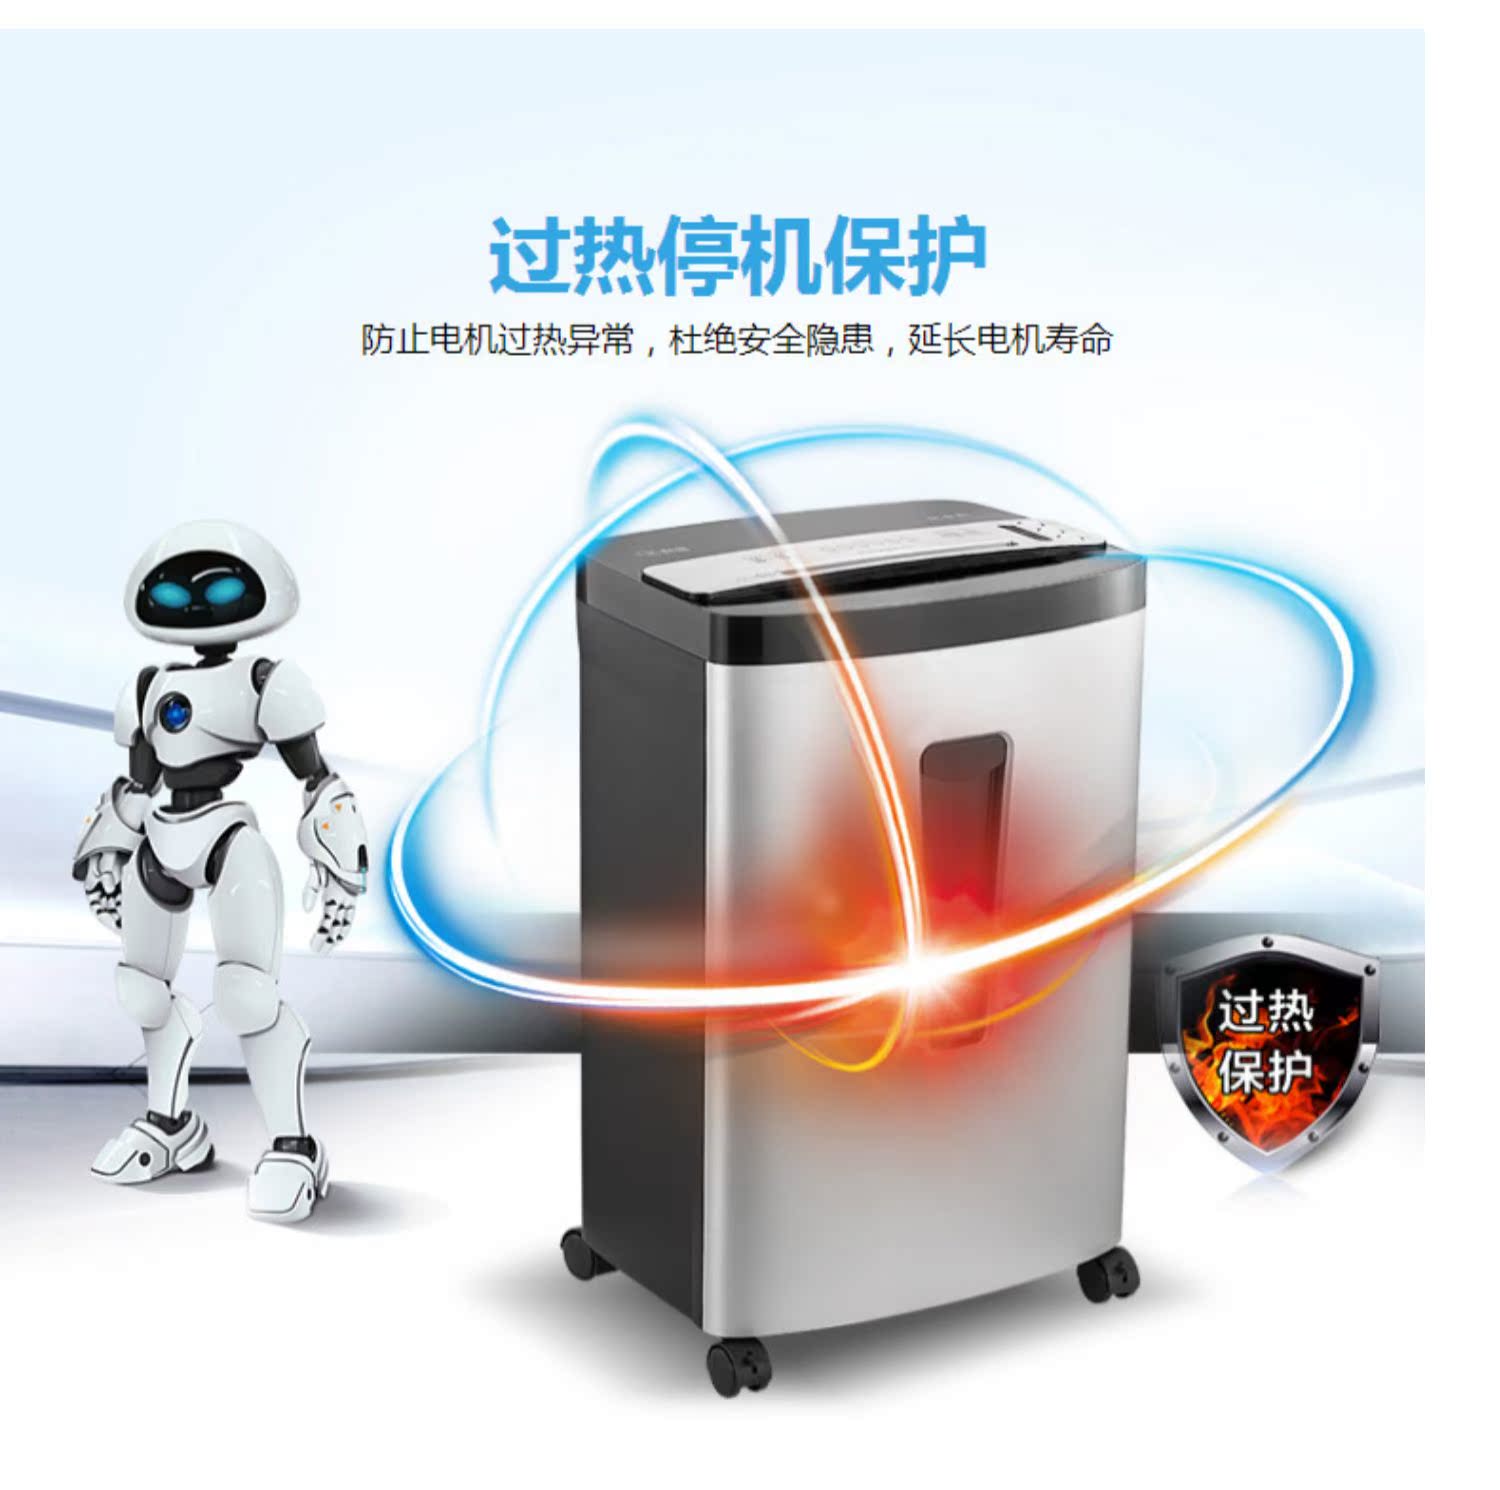 Máy hủy tài liệu sao chổi Rui Jingang Express máy hủy tài liệu thời gian dài đa chức năng kinh doanh tài liệu bột máy thông minh - Máy hủy tài liệu